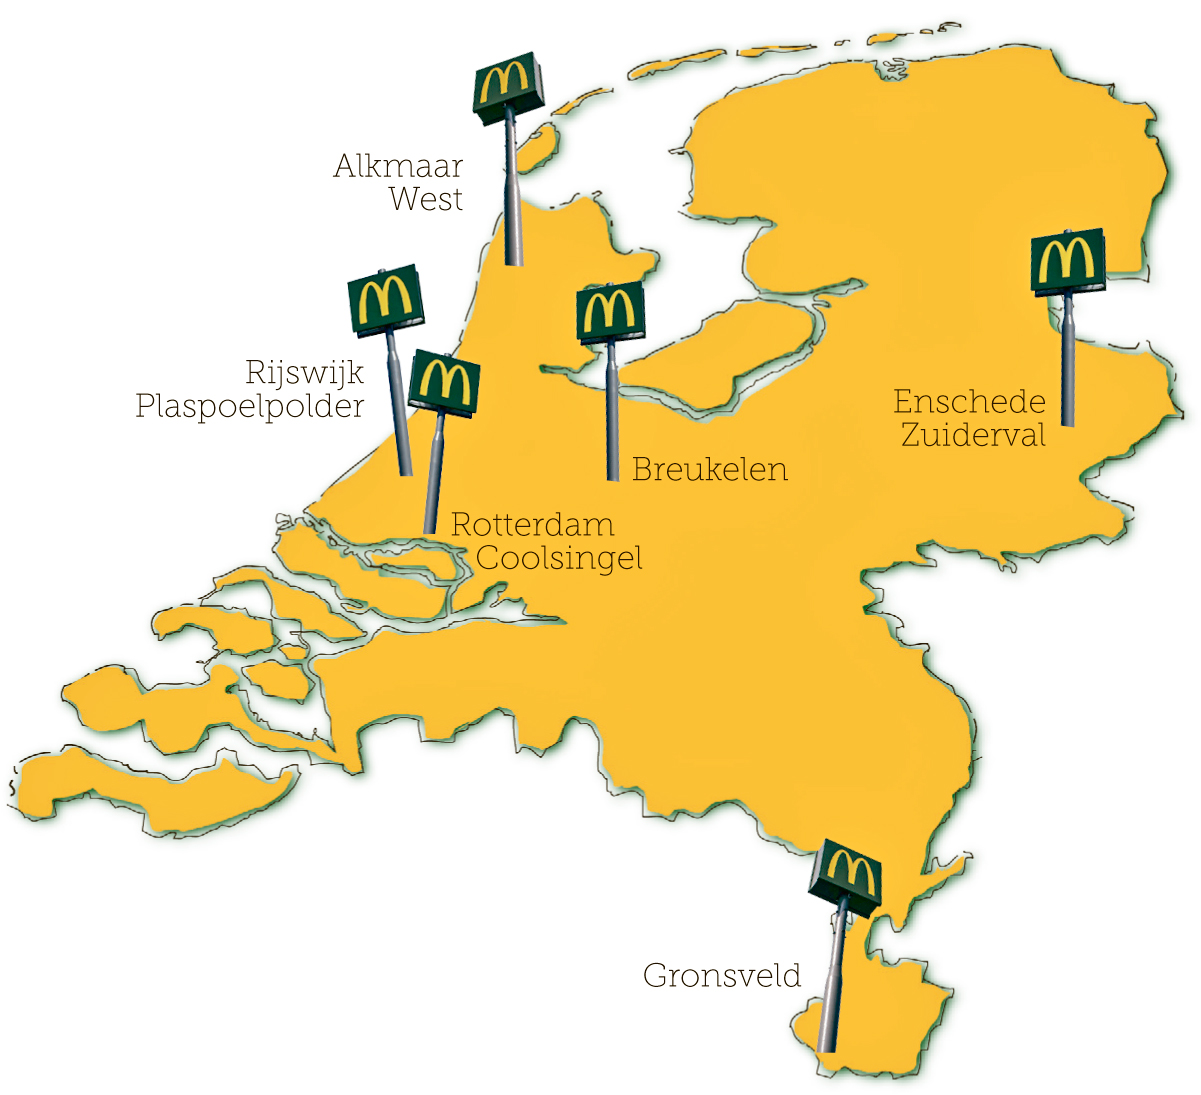 De zes nieuwe restaurantopeningen van McDonald's in 2014 leverden in totaal zo’n 500 nieuwe banen op. Bron: FranchiseFormules.NL